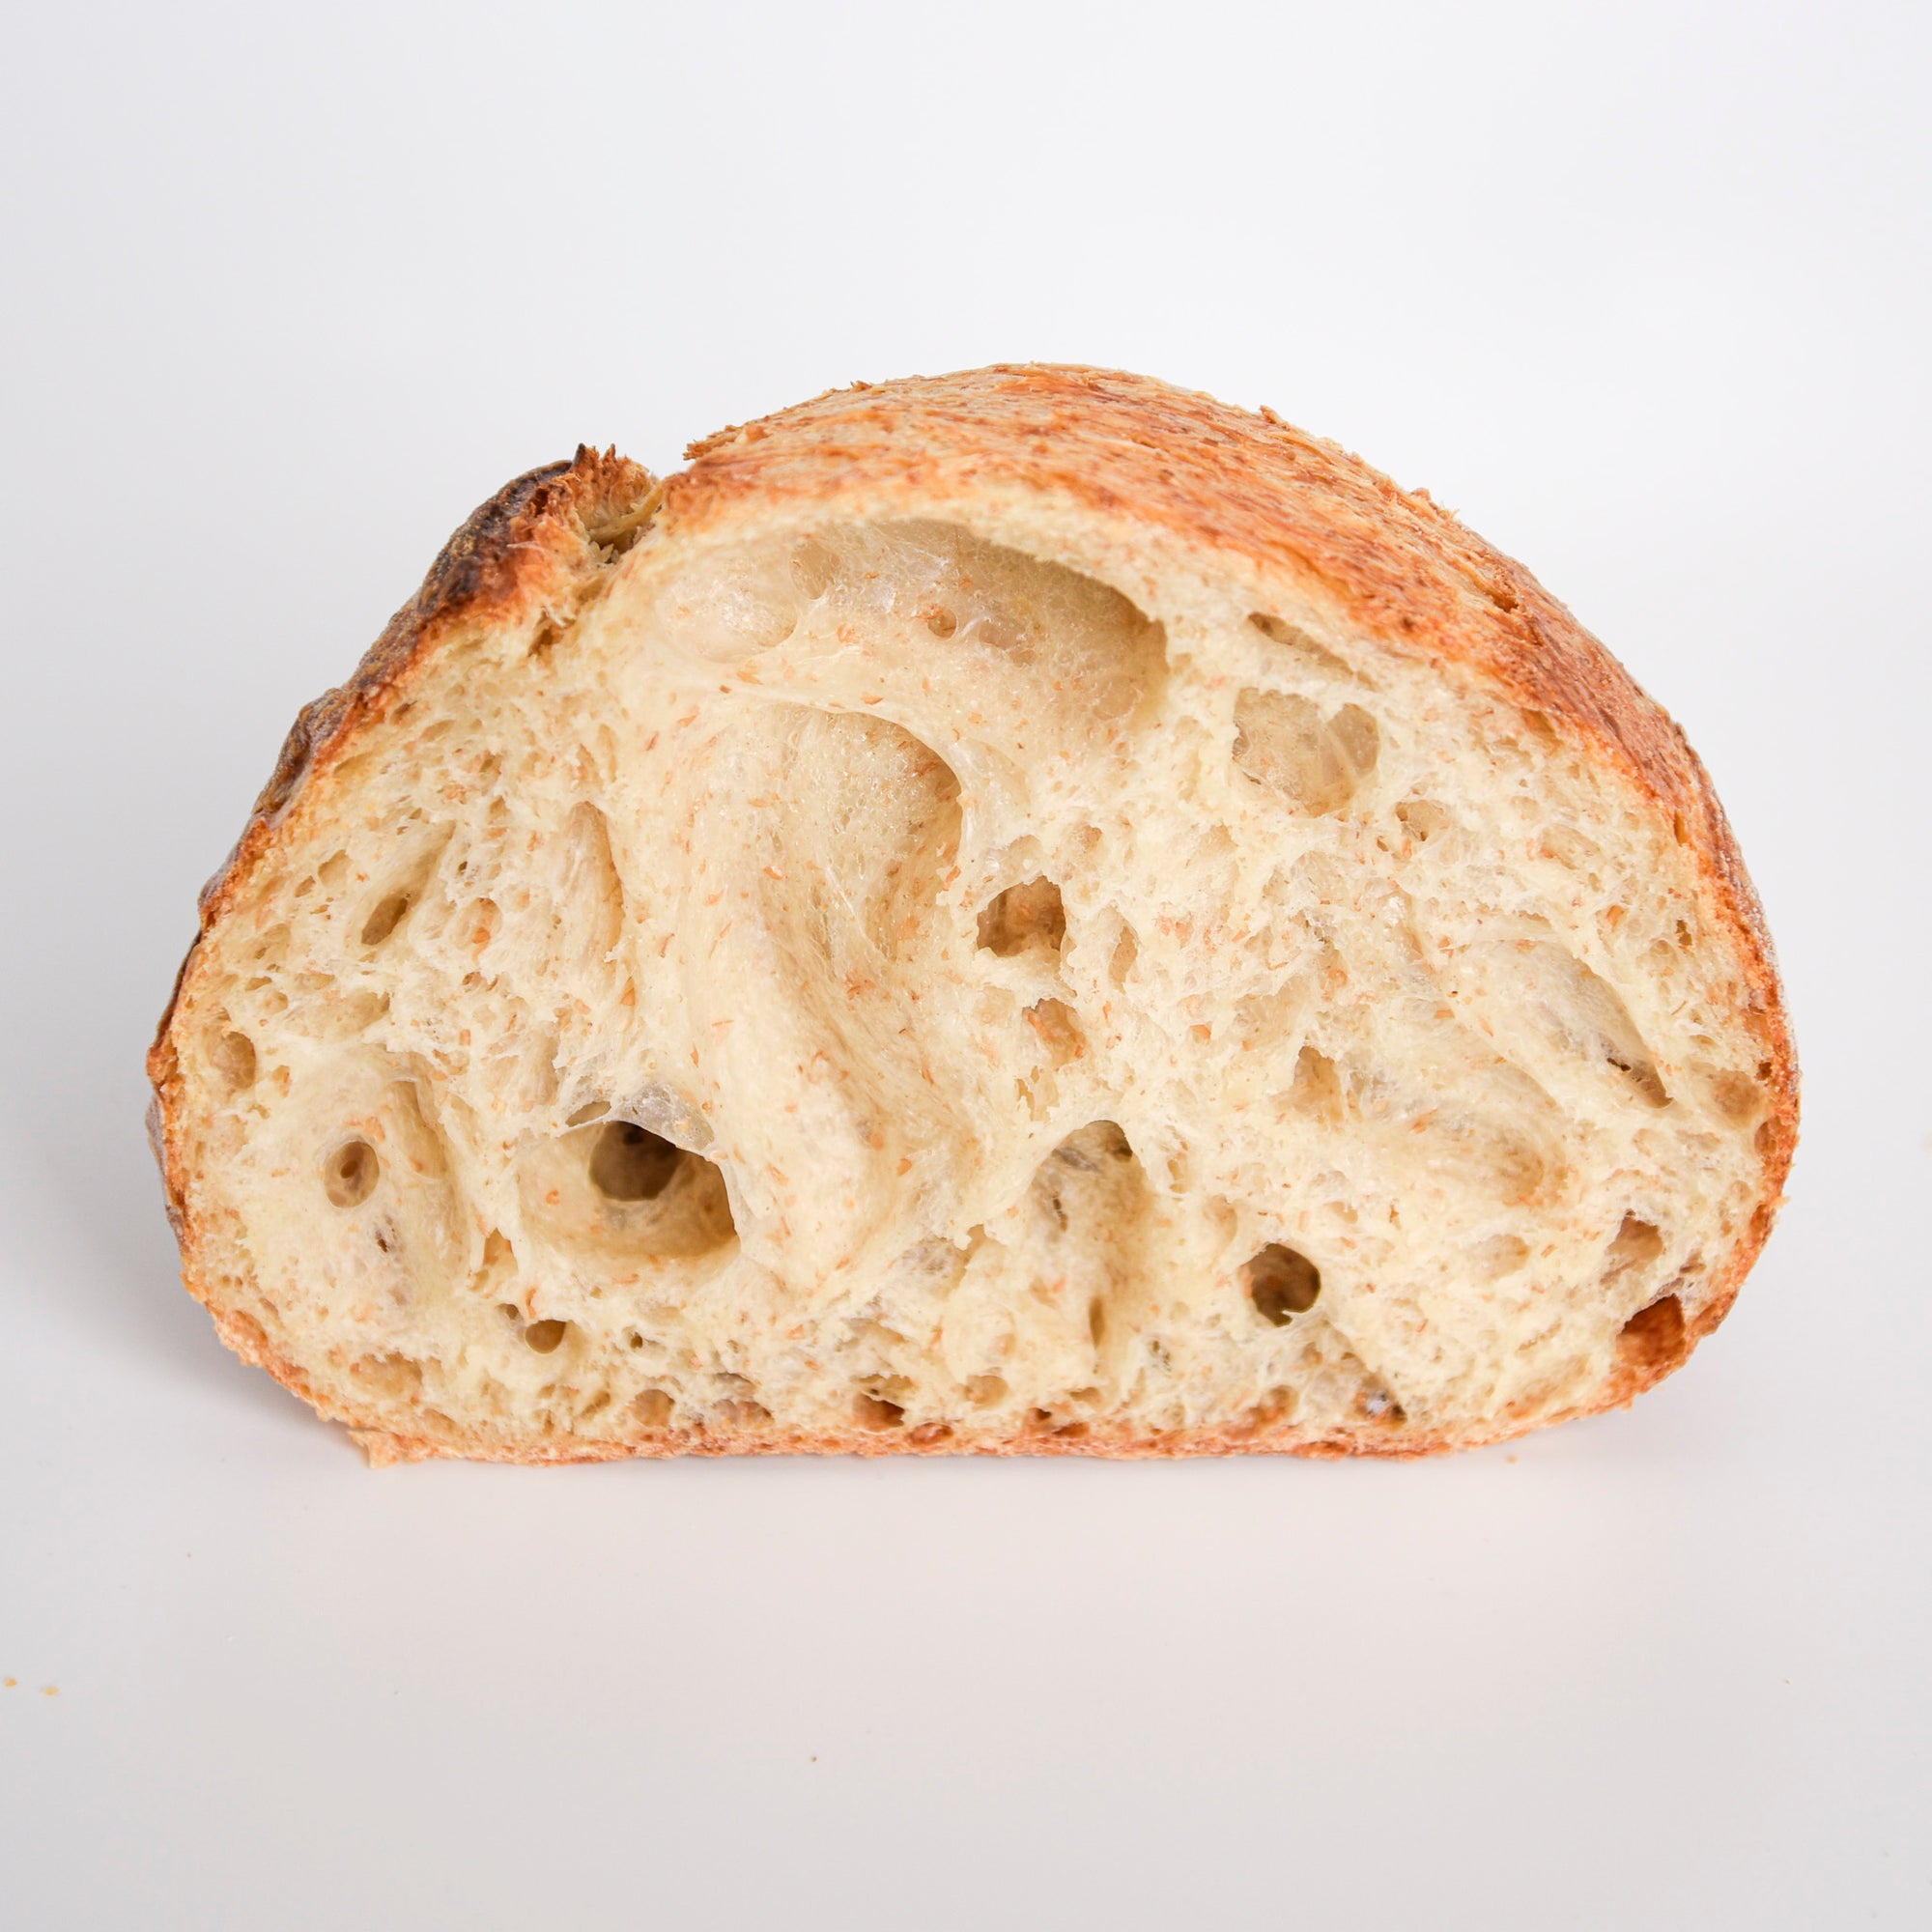 Le fournil bakery pain de ménage sliced loaf